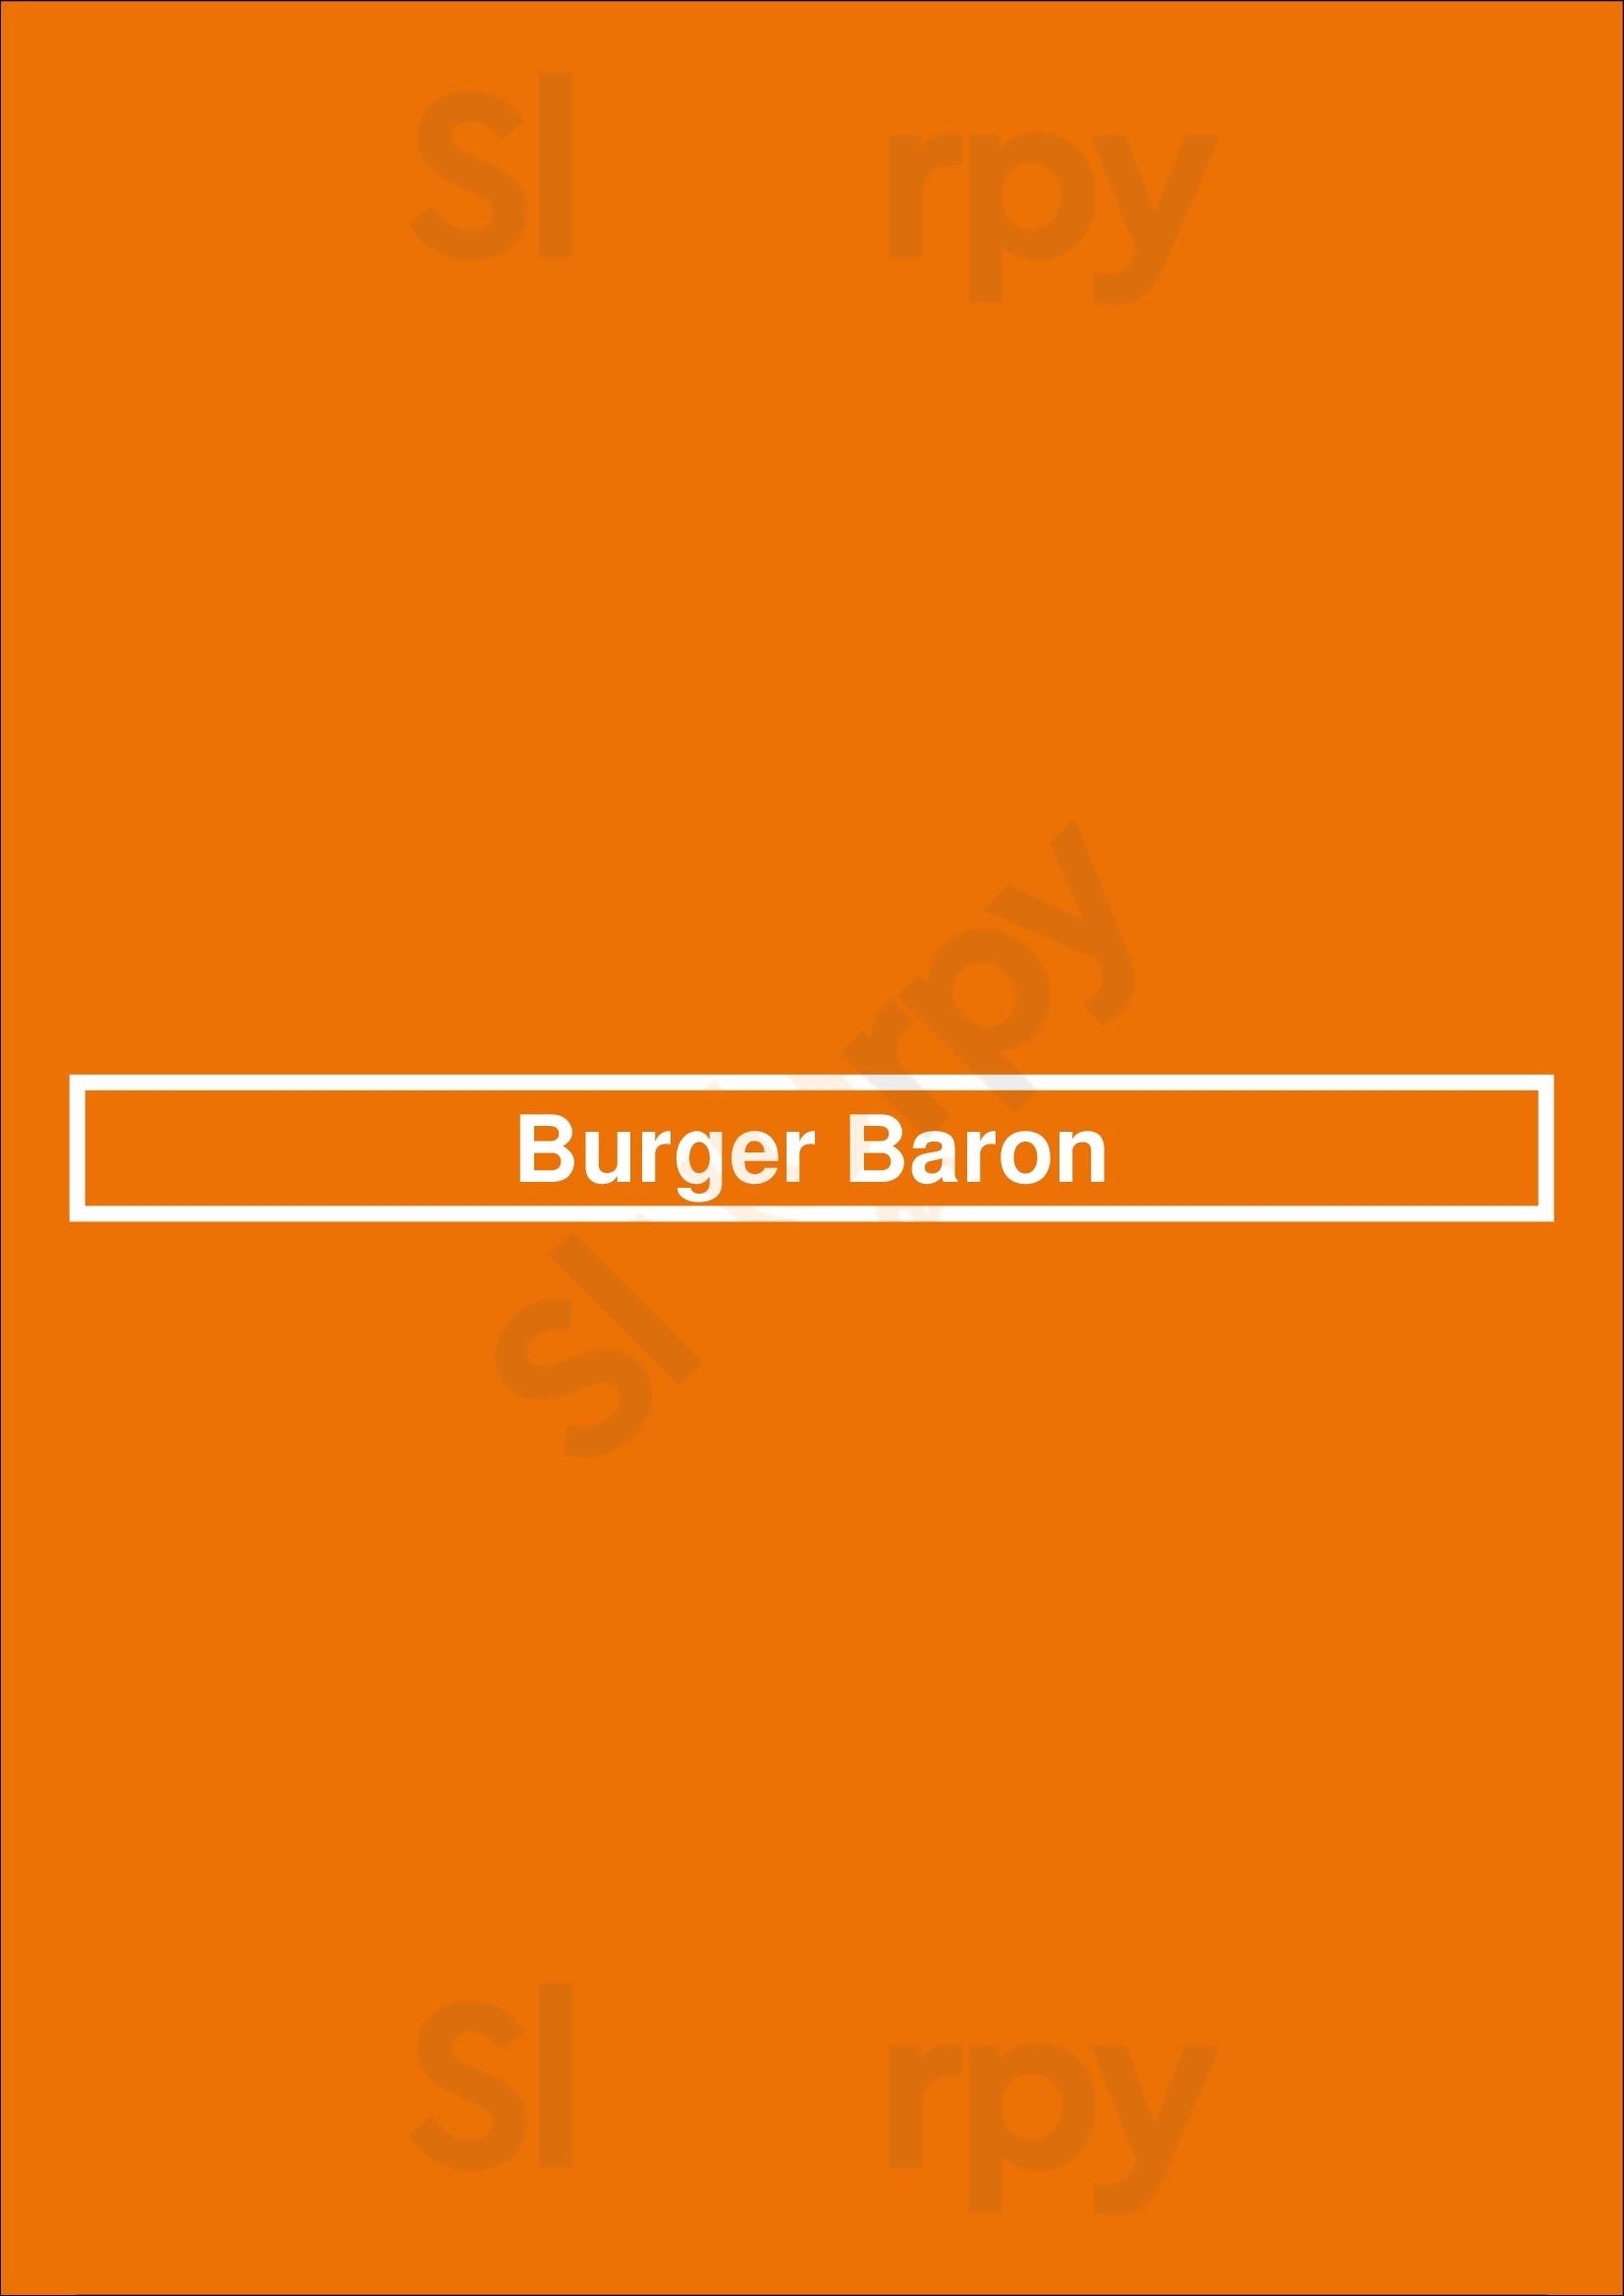 Burger Baron Sherwood Park Menu - 1